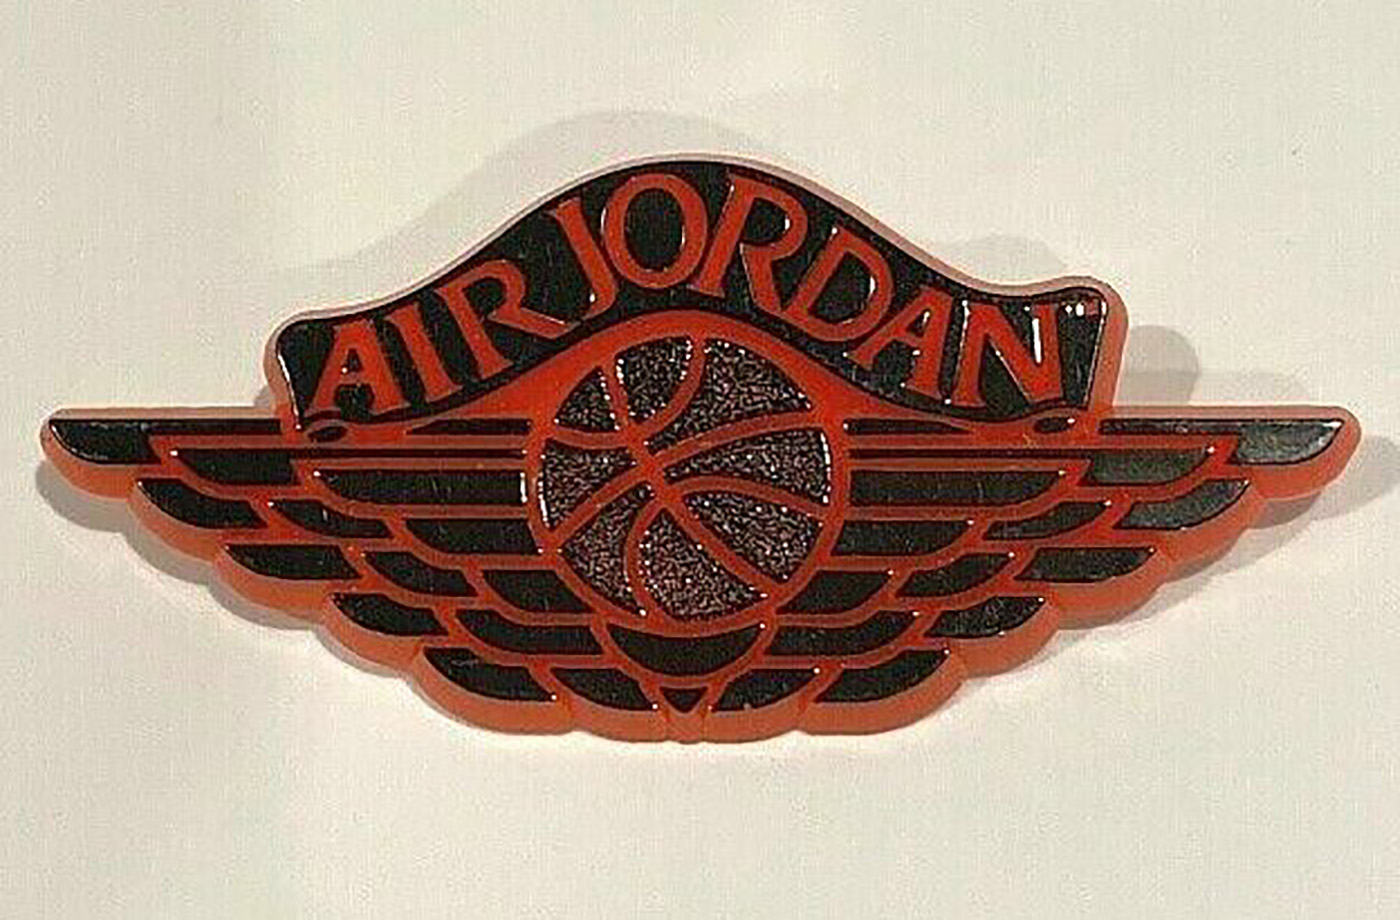 air jordan retro logo